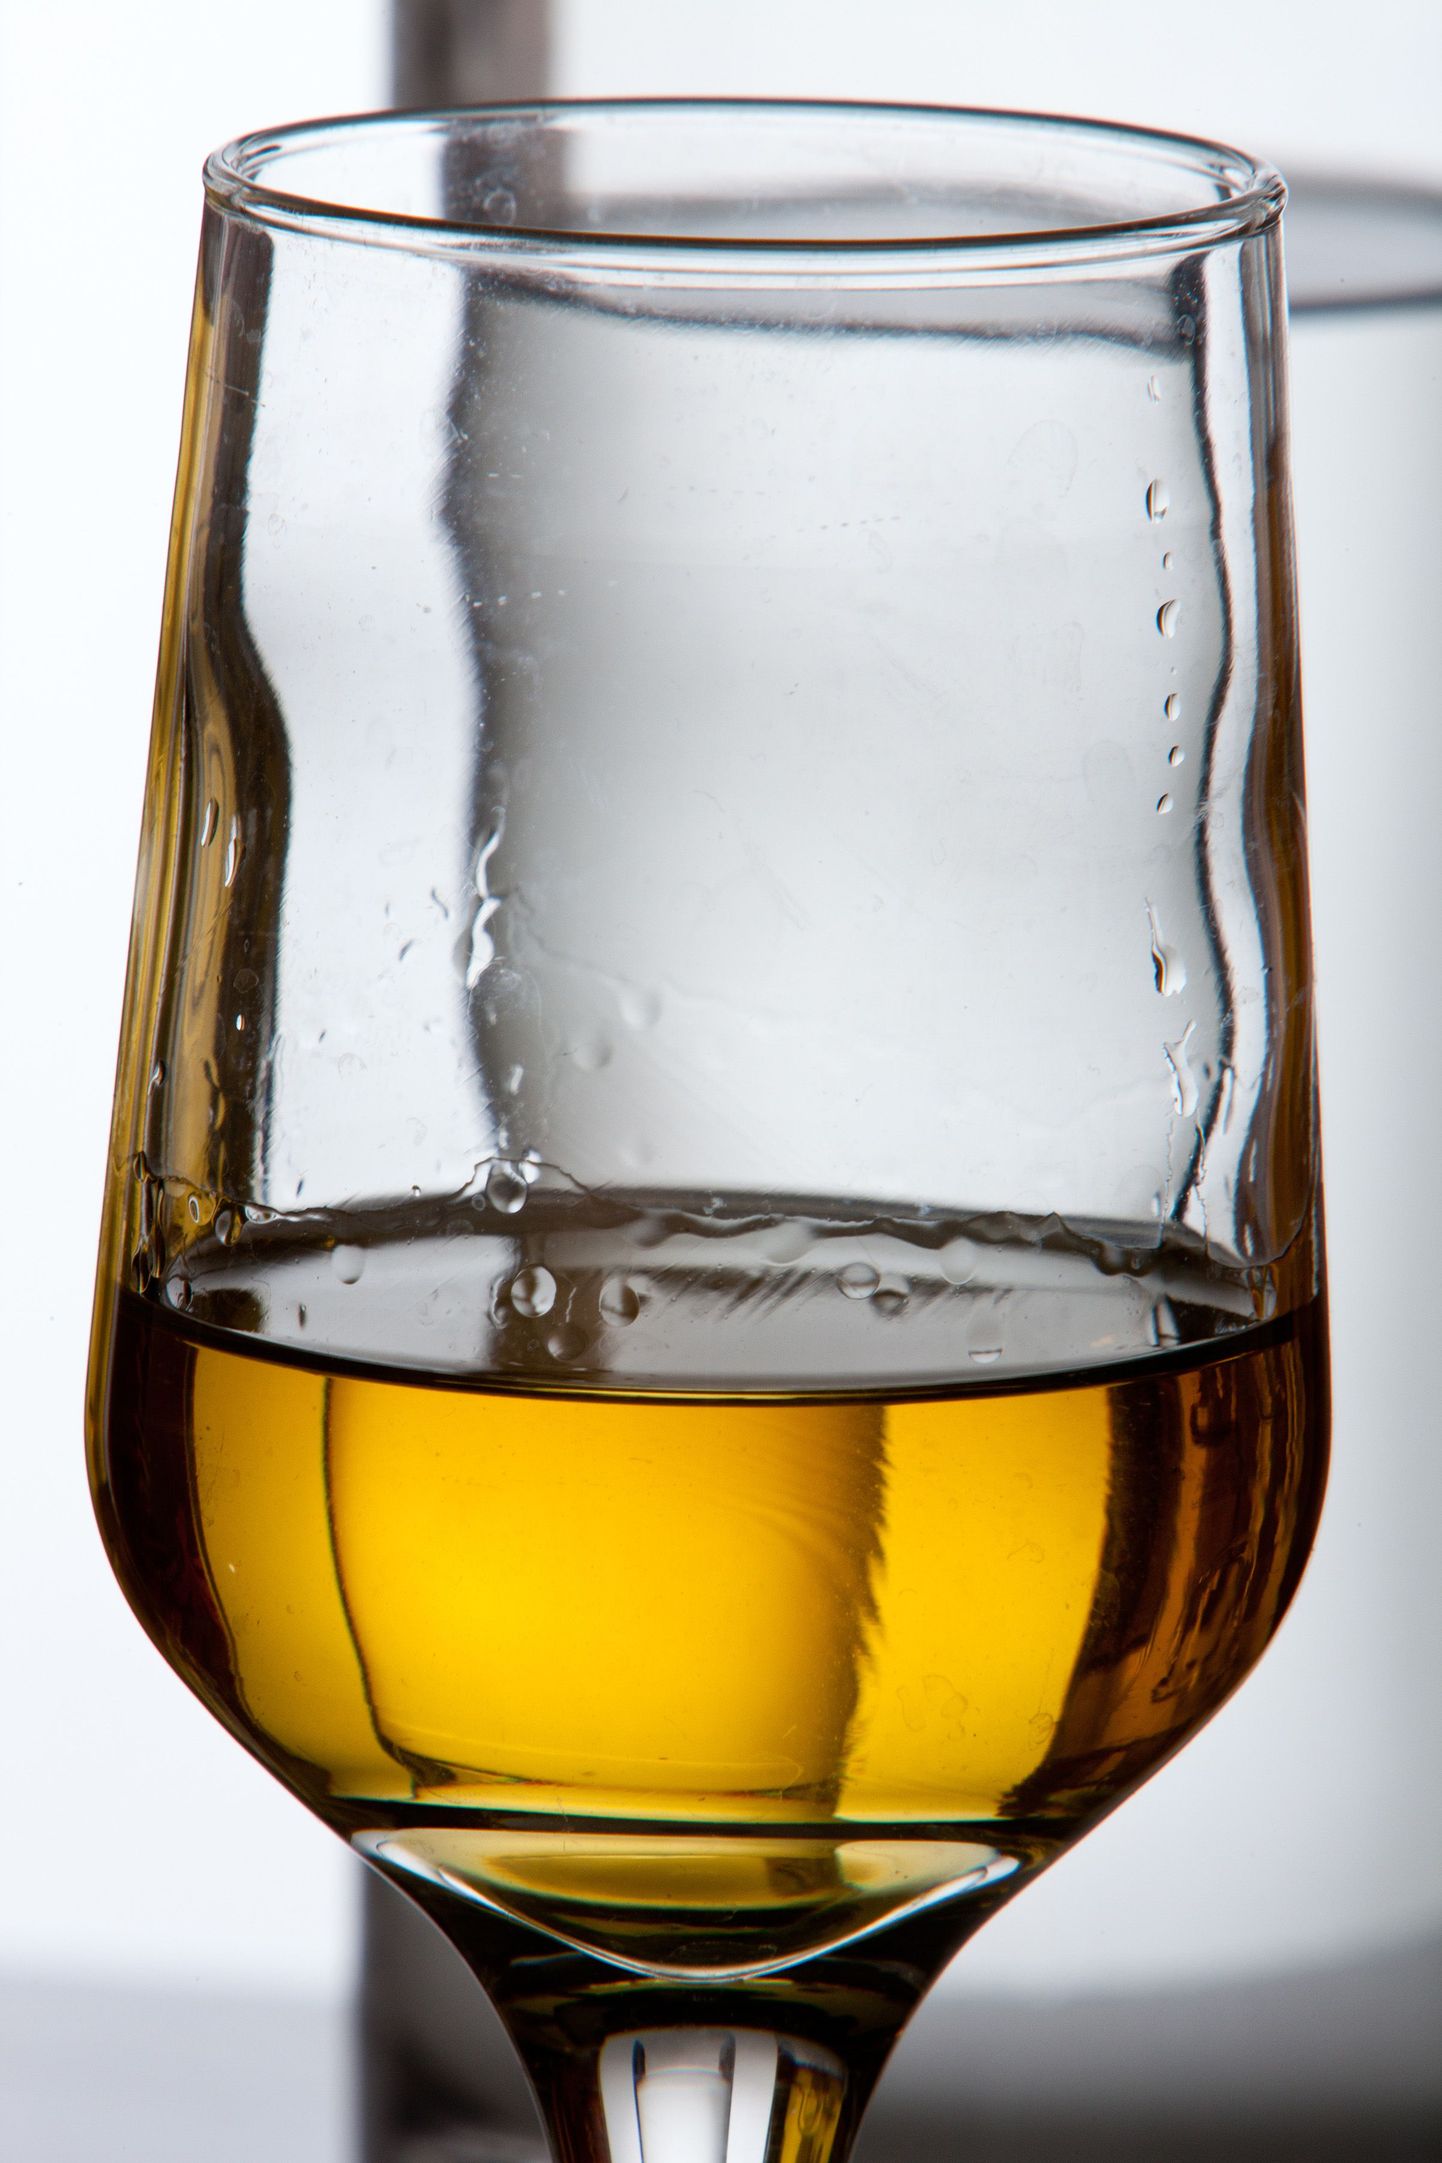 Kui klaasikene rummi võetakse sageli, siis võib see viidata alkoholiprobleemile.